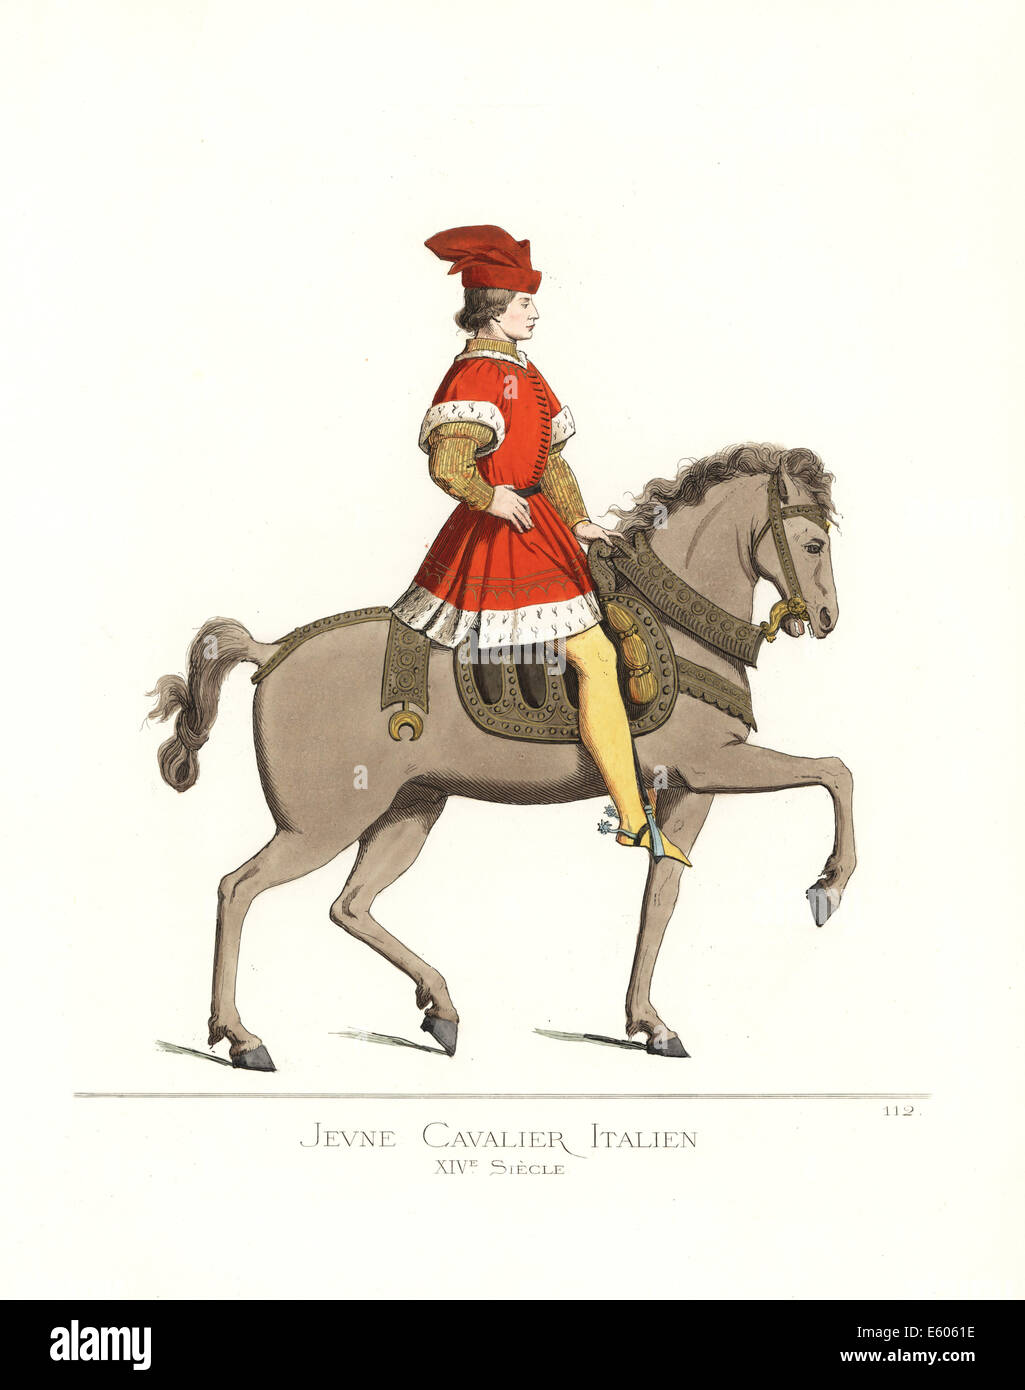 Kostüm von einem jungen italienischen Kavallerie Mann, 14. Jahrhundert. Stockfoto